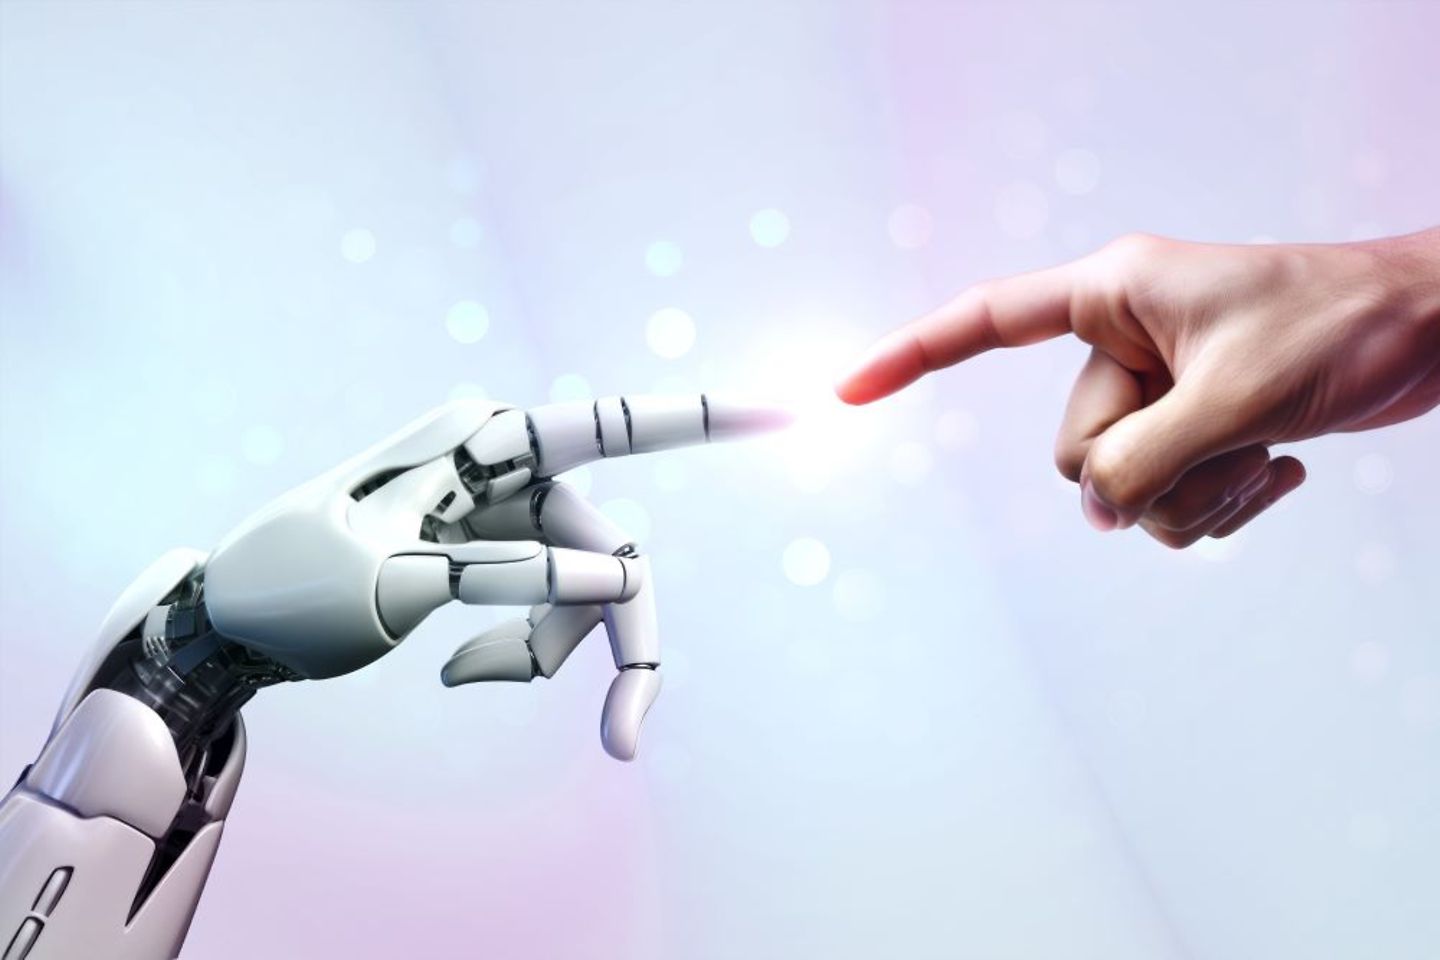 Une main robotique et une main humaine se touchent et s'unissent